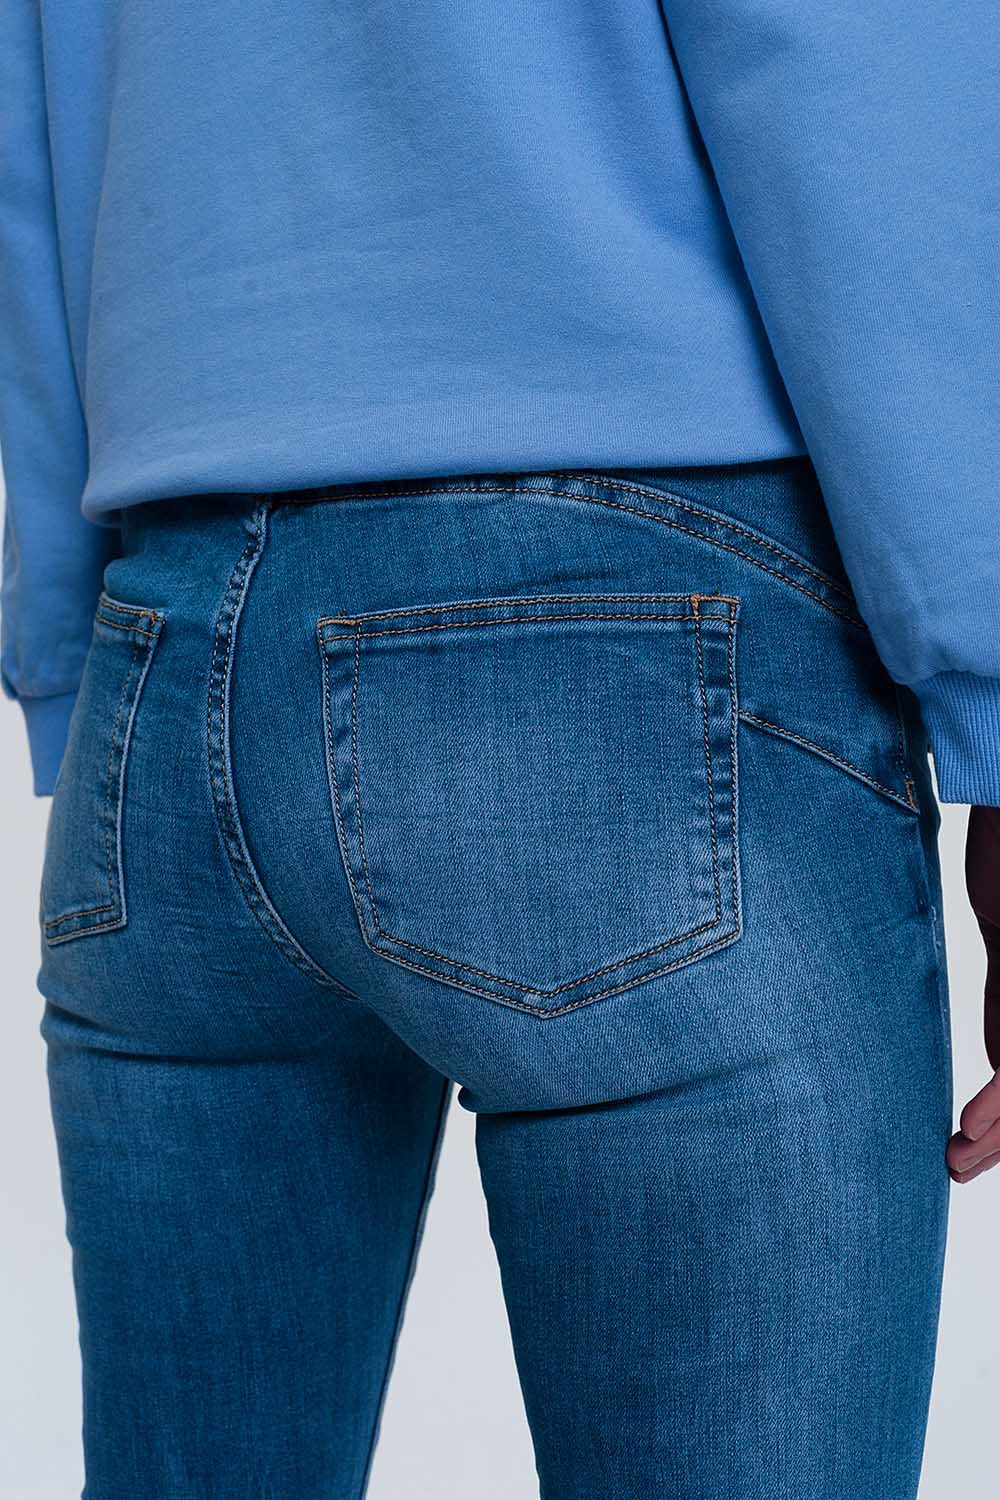 jeans skinny in denim chiaro con caviglie piegate e dettaglio strappato